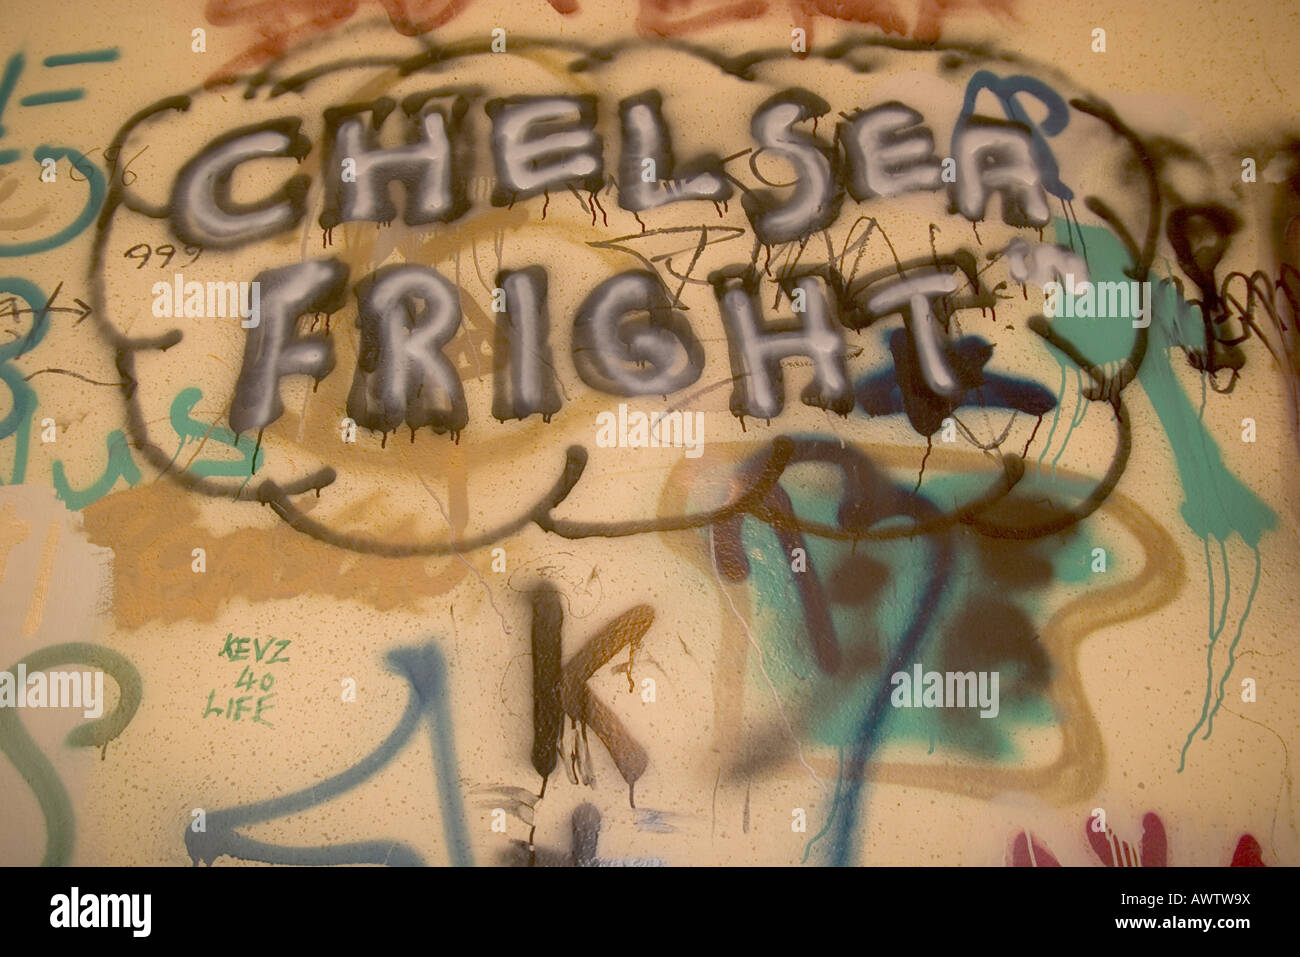 Grafitti 'Chelsea' spavento Foto Stock